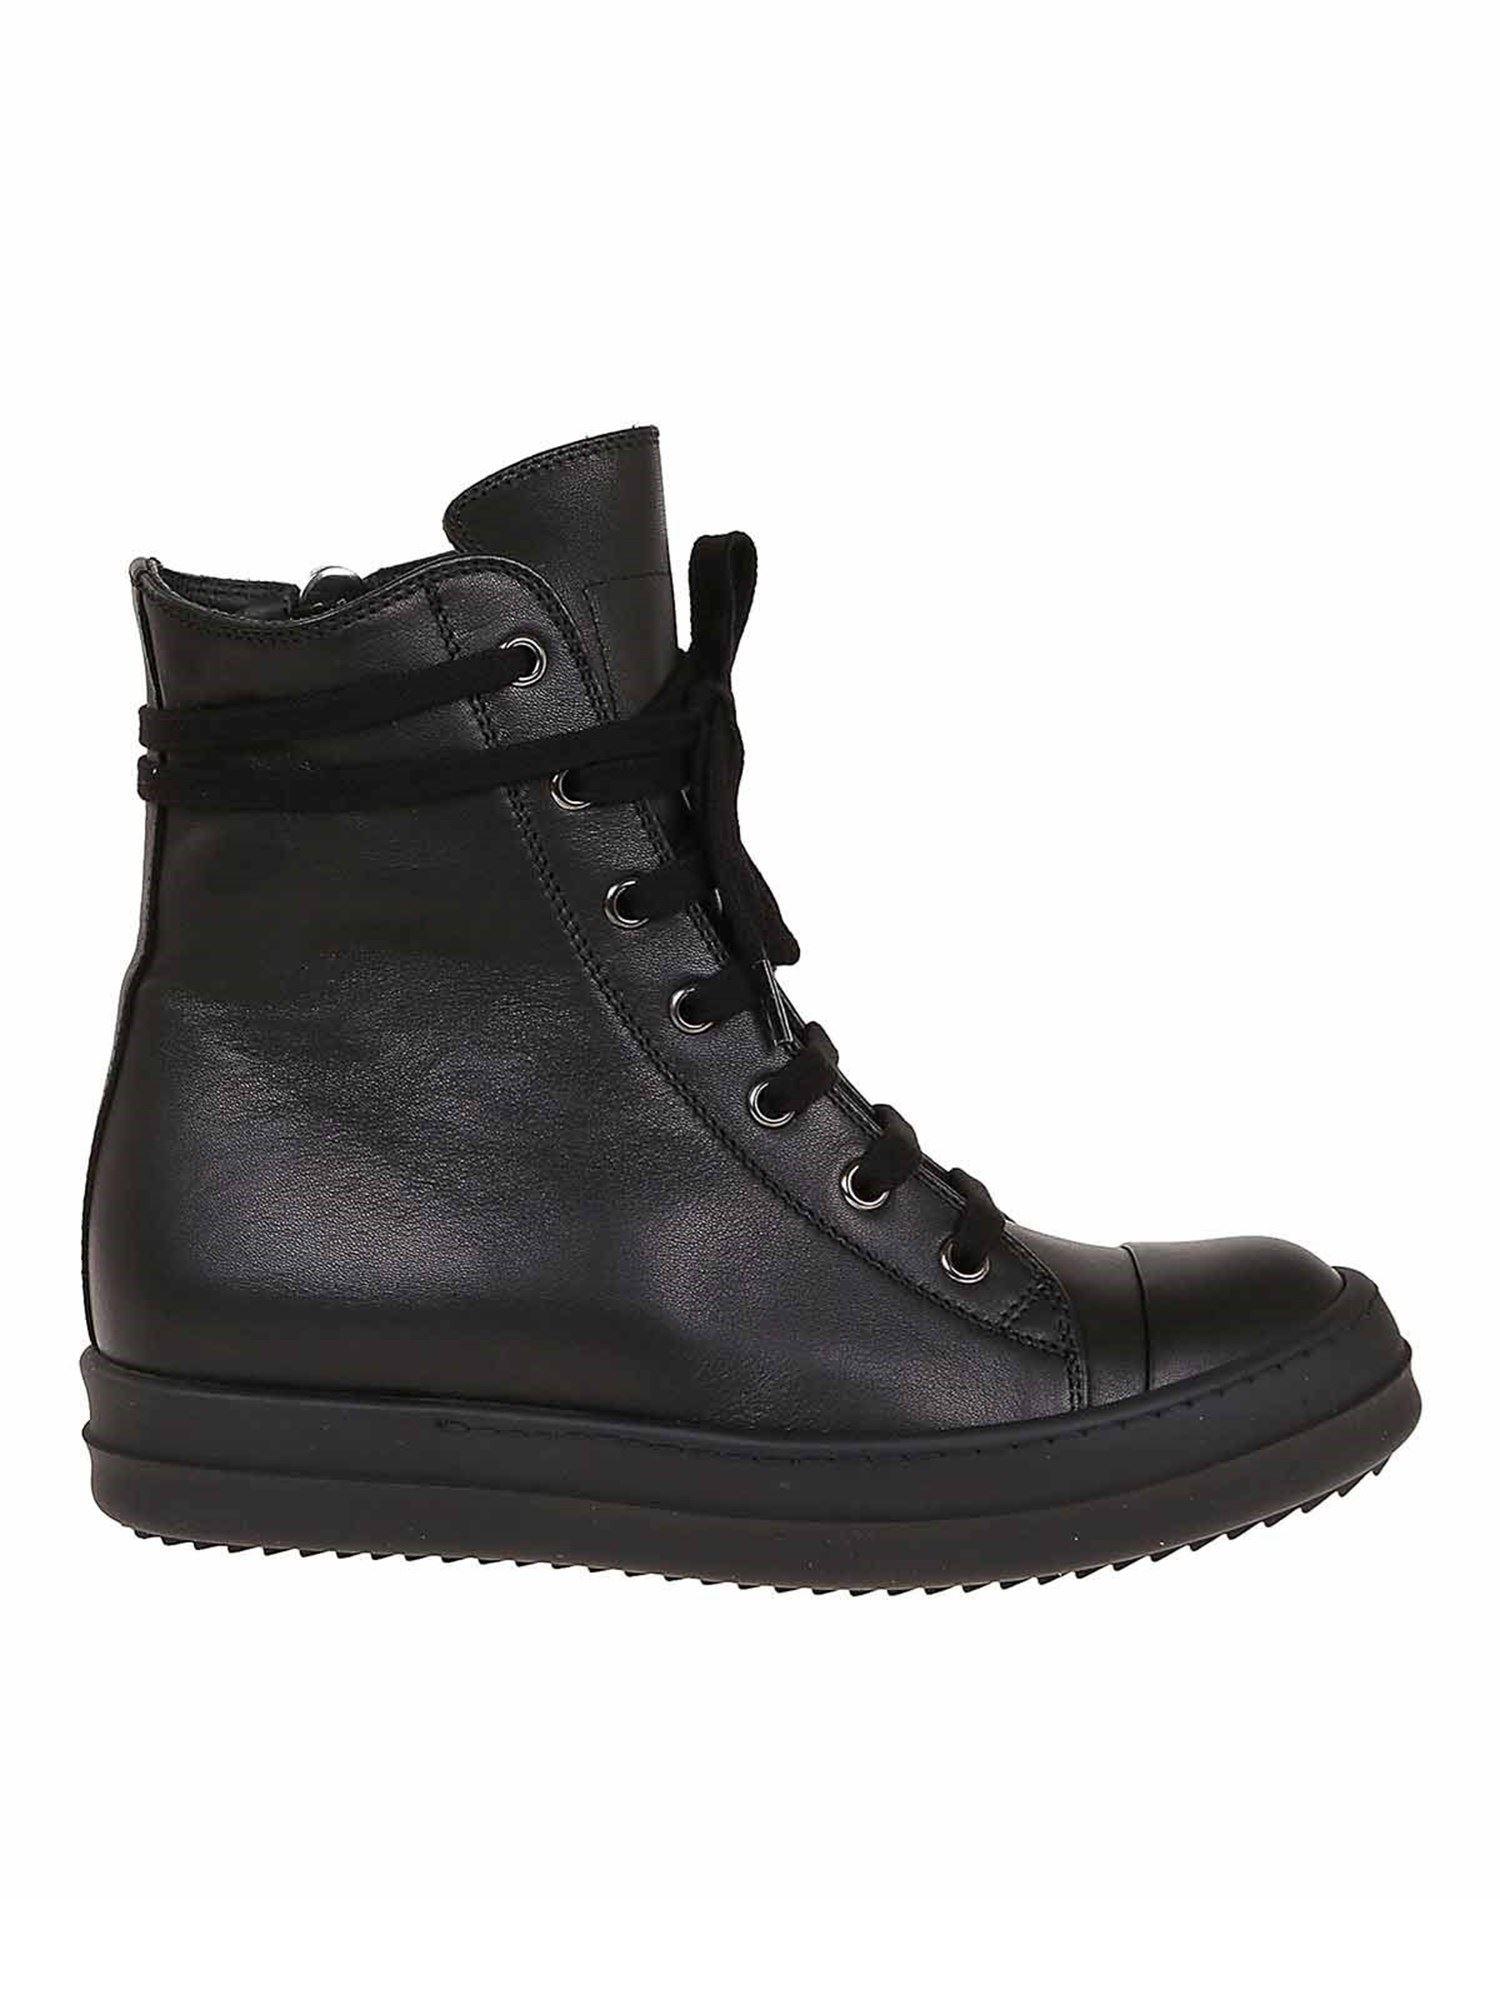 Rick Owens Leather Tecuatl Sneakers in Black - Lyst